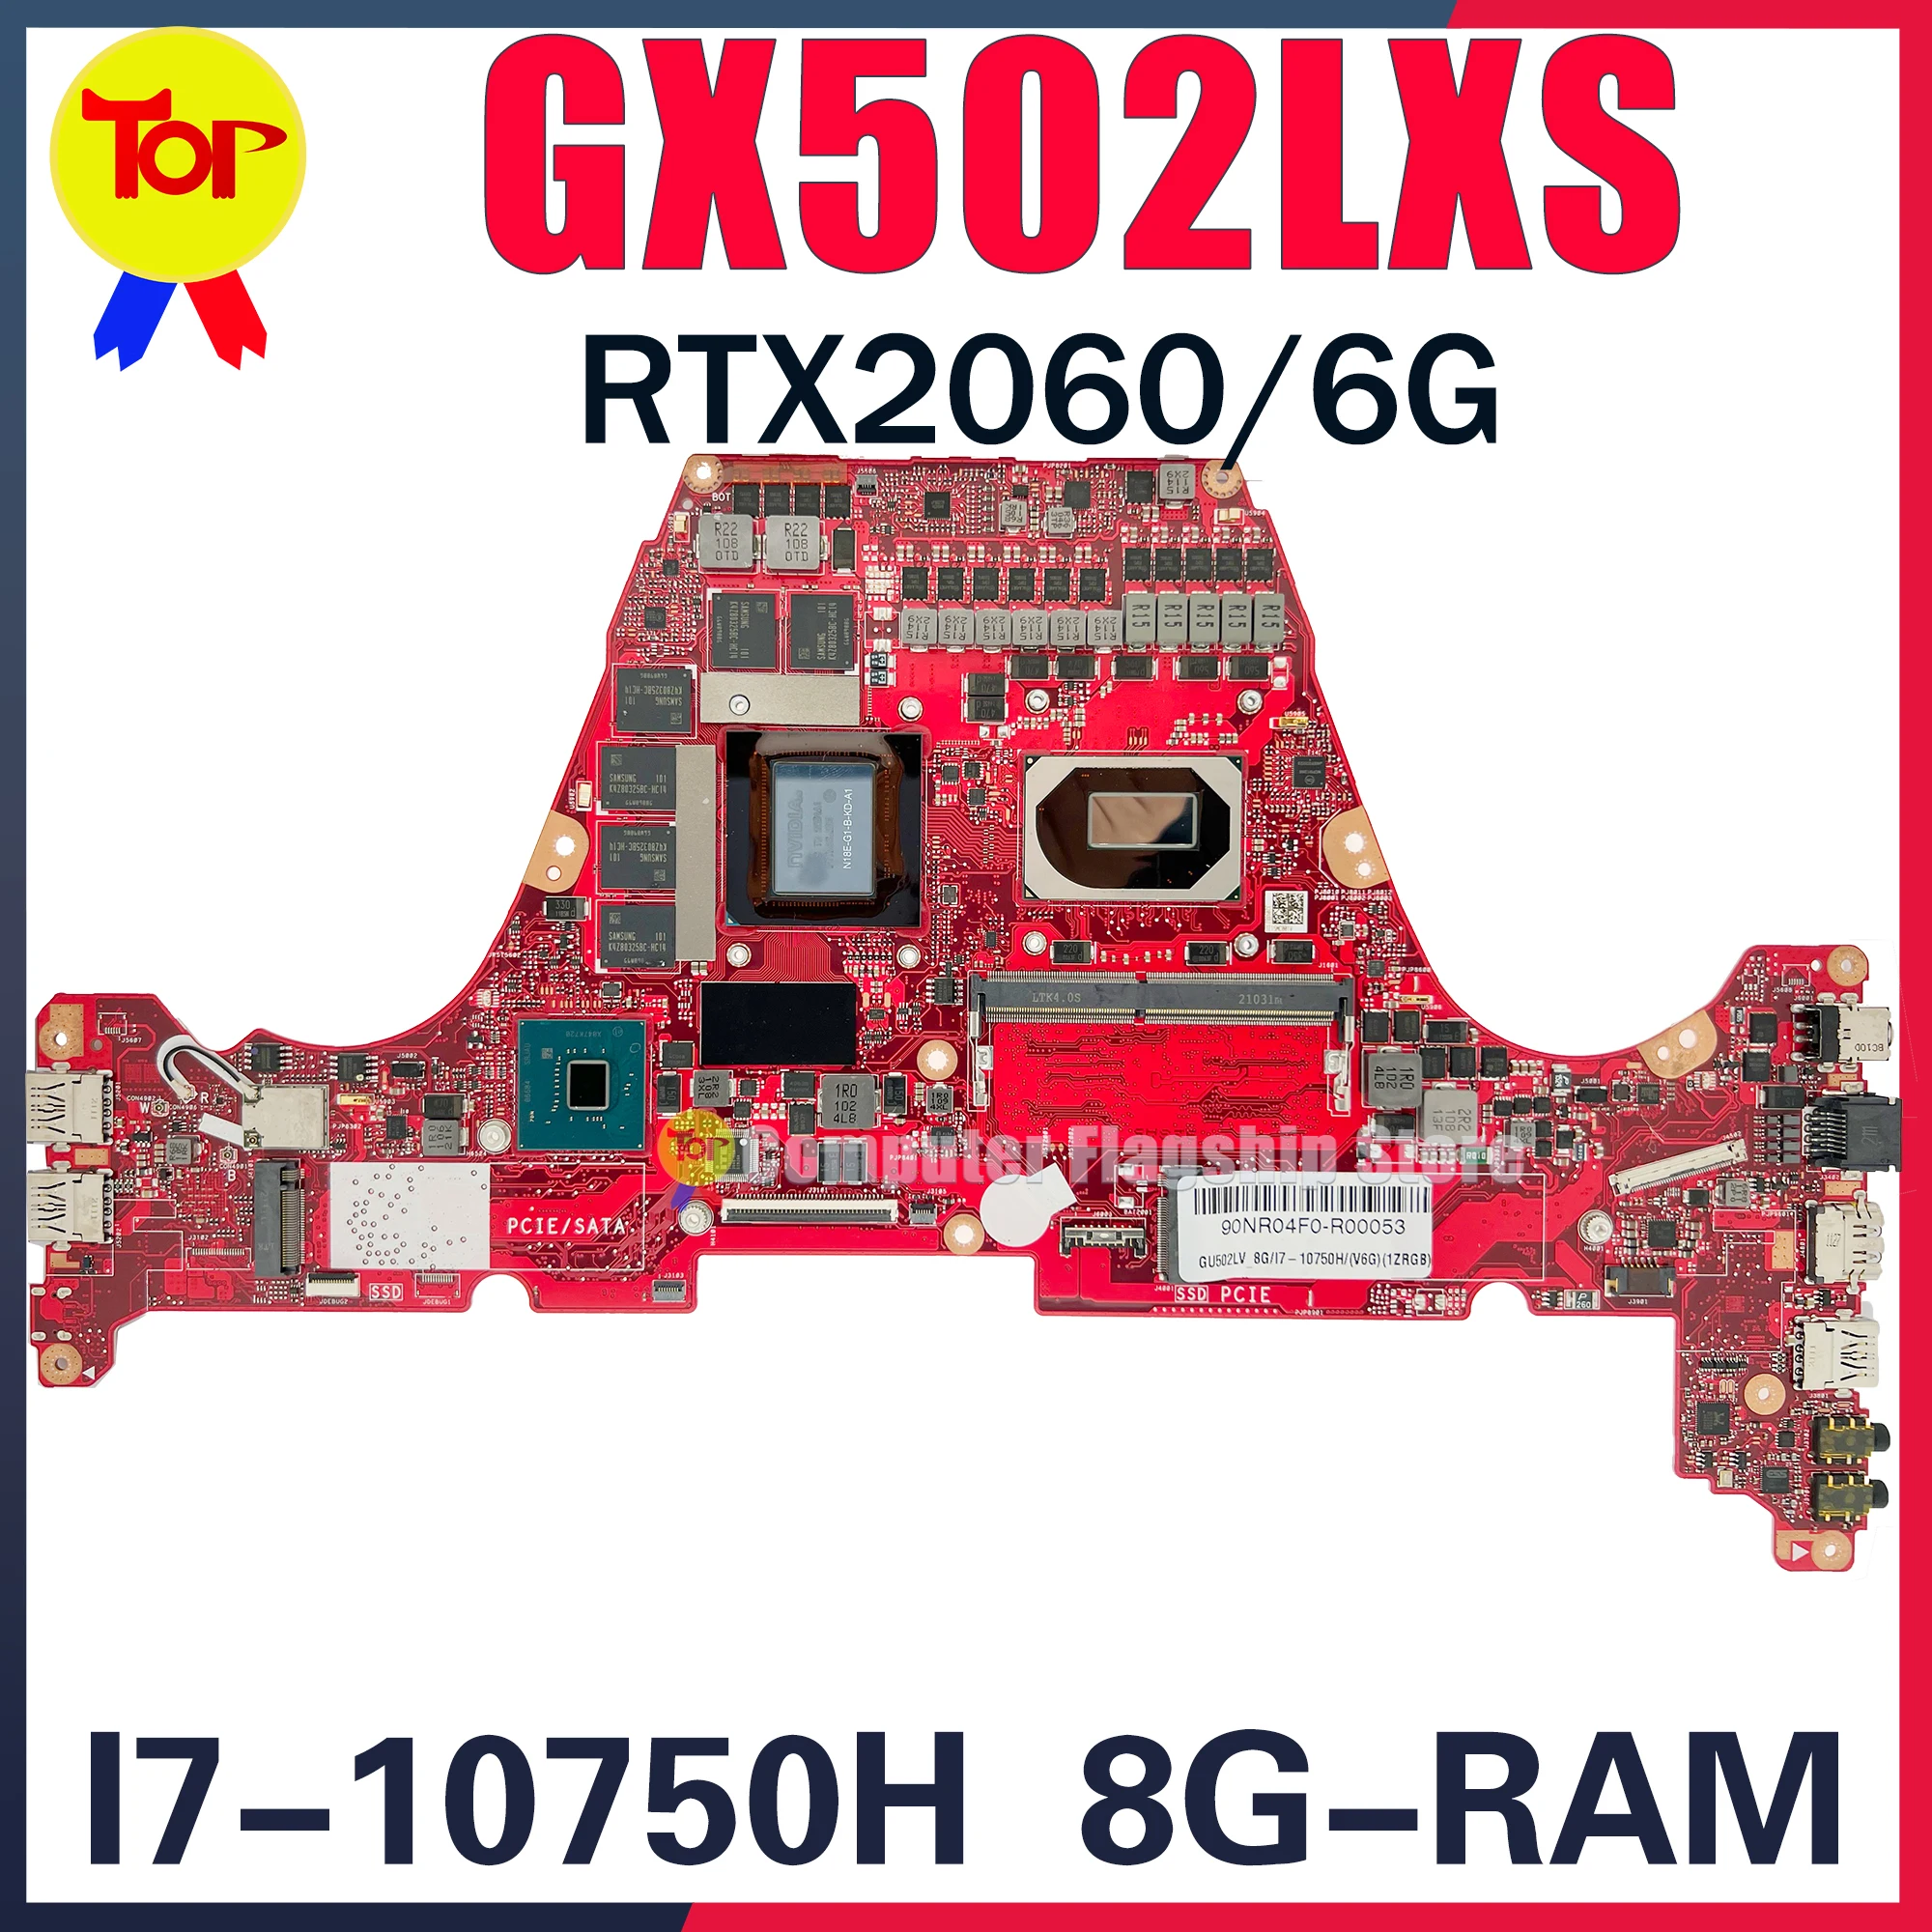 

GX502LXS Laptop Motherboard For ASUS GU502LV GU502LW GU502LU Zephyrus M15 GU502L I7-10750H 8G-RAM RTX2060 V6G Mainboard OK TEST